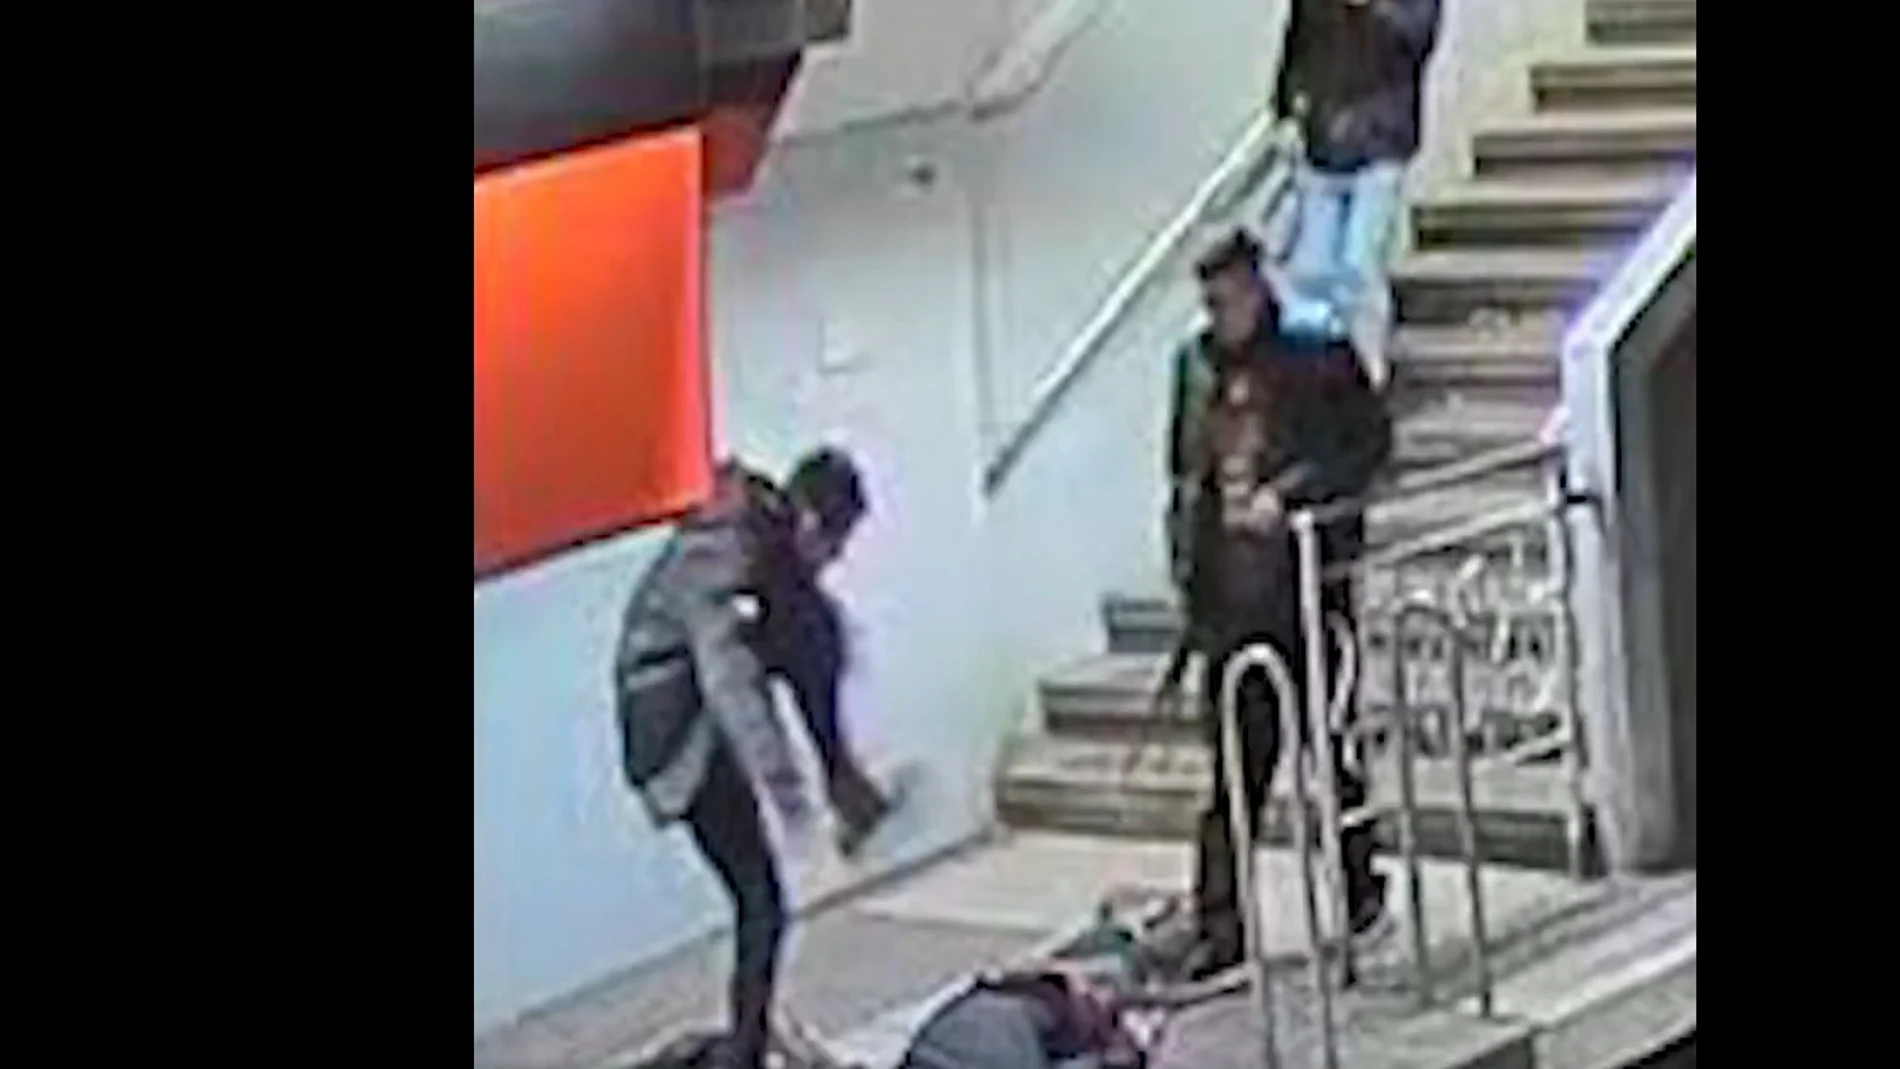 Imagen de la agresión captada por las cámaras de seguridad del metro